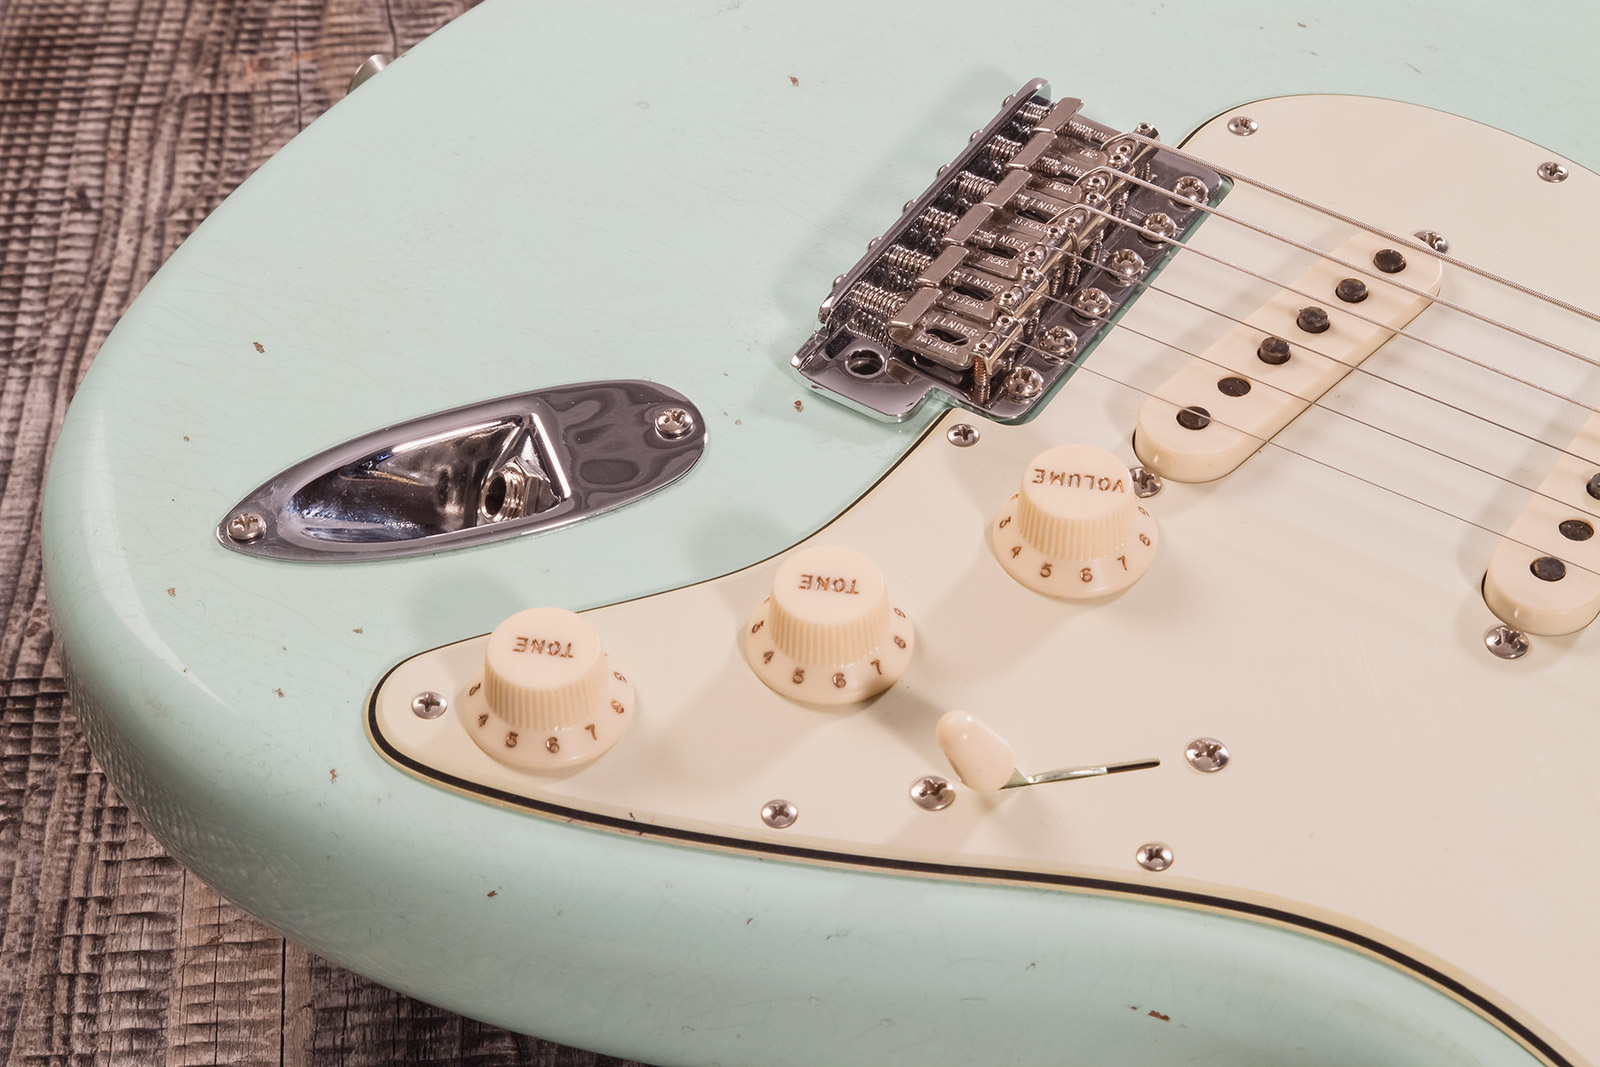 Fender Custom Shop Strat 1964 3s Trem Rw #cz570381 - Journeyman Relic Aged Surf Green - Elektrische gitaar in Str-vorm - Variation 4